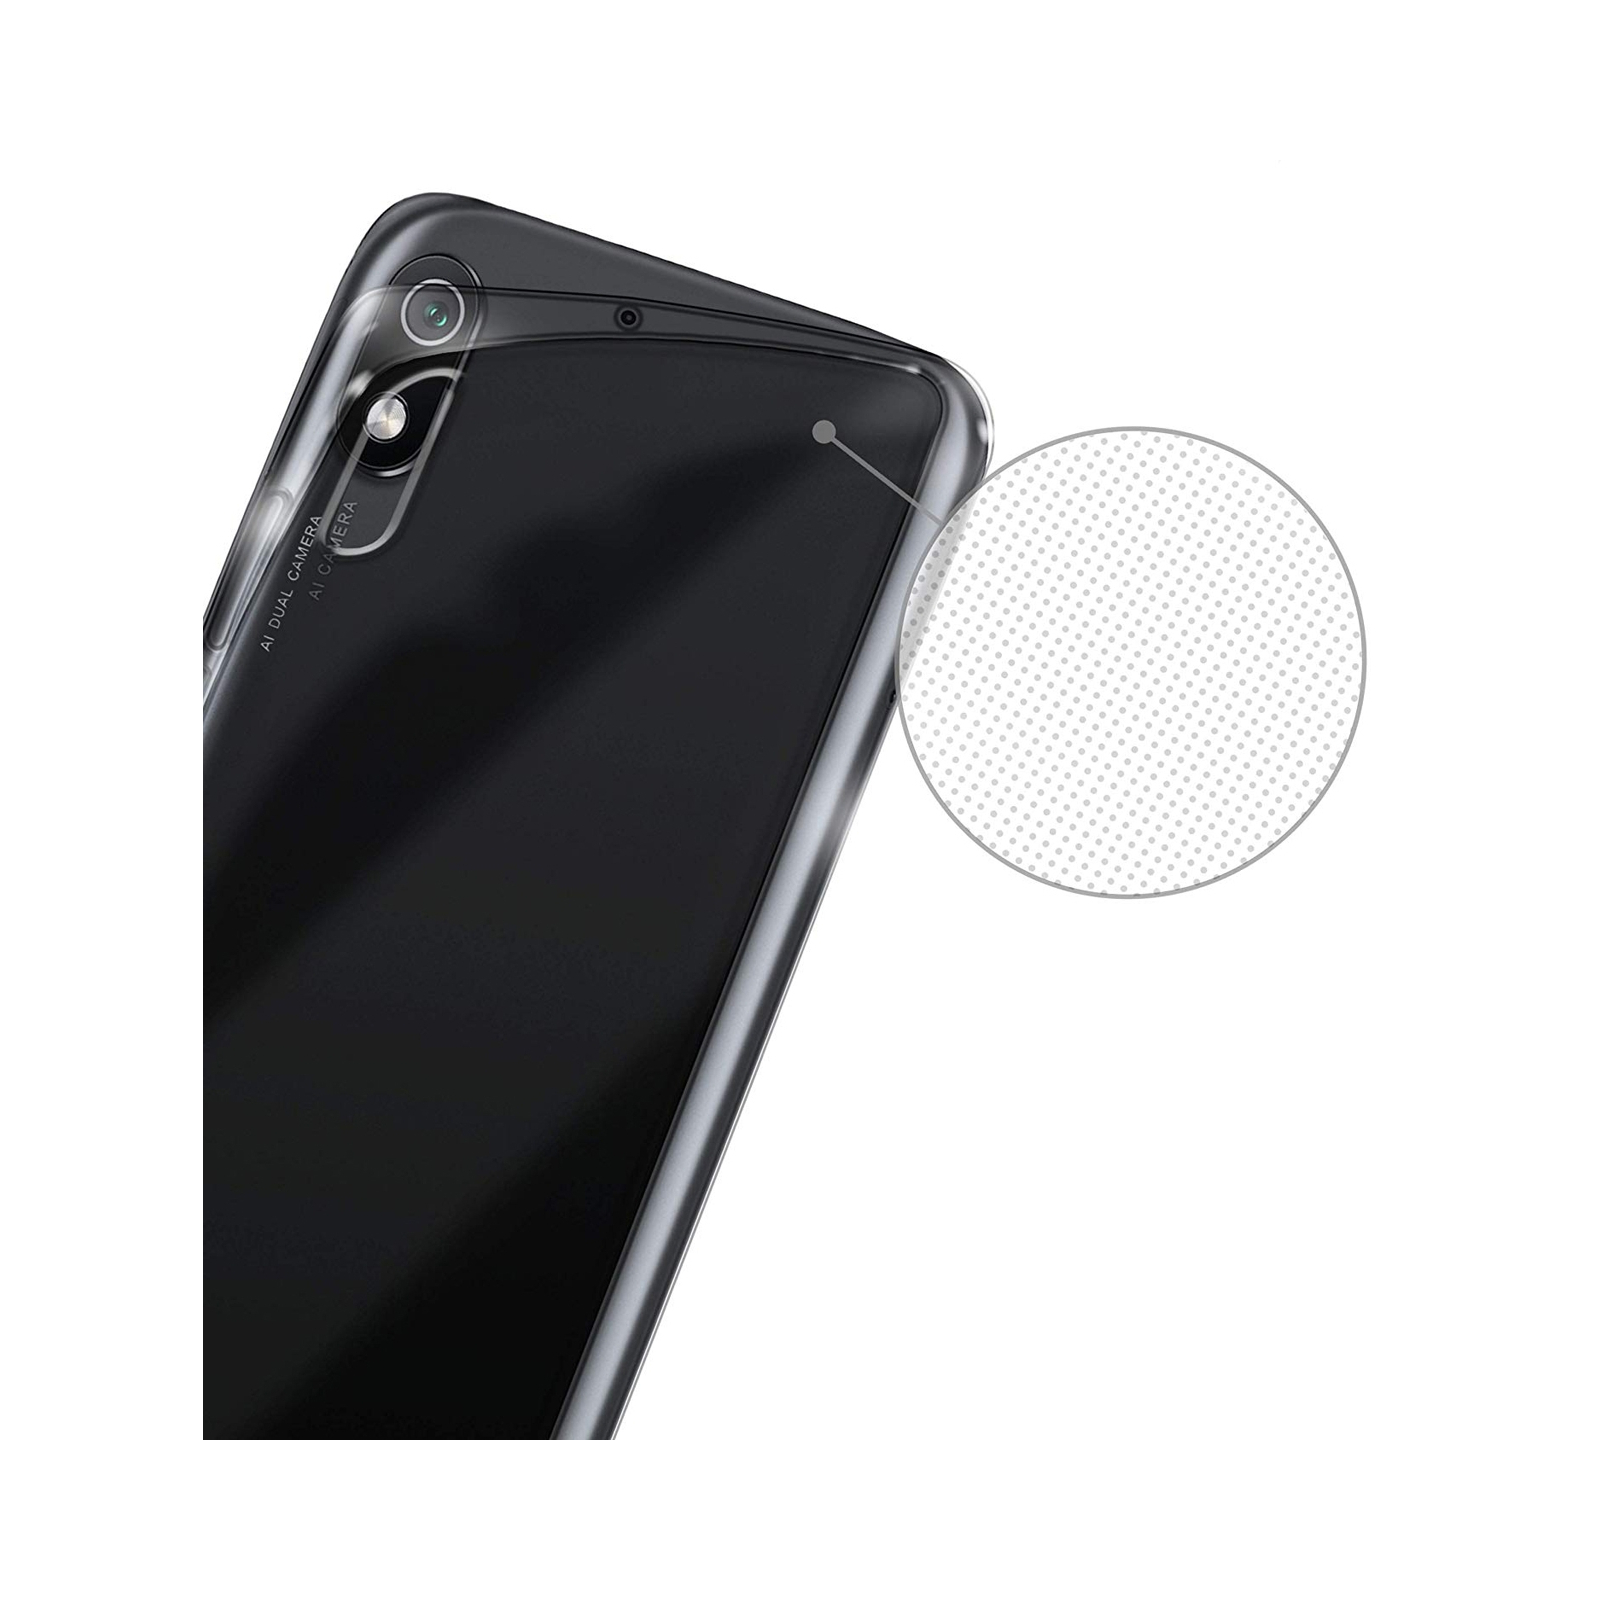 Чехол для мобильного телефона Laudtec для Xiaomi Redmi 7a Clear tpu (Transperent) (LC-XR7AT) изображение 4